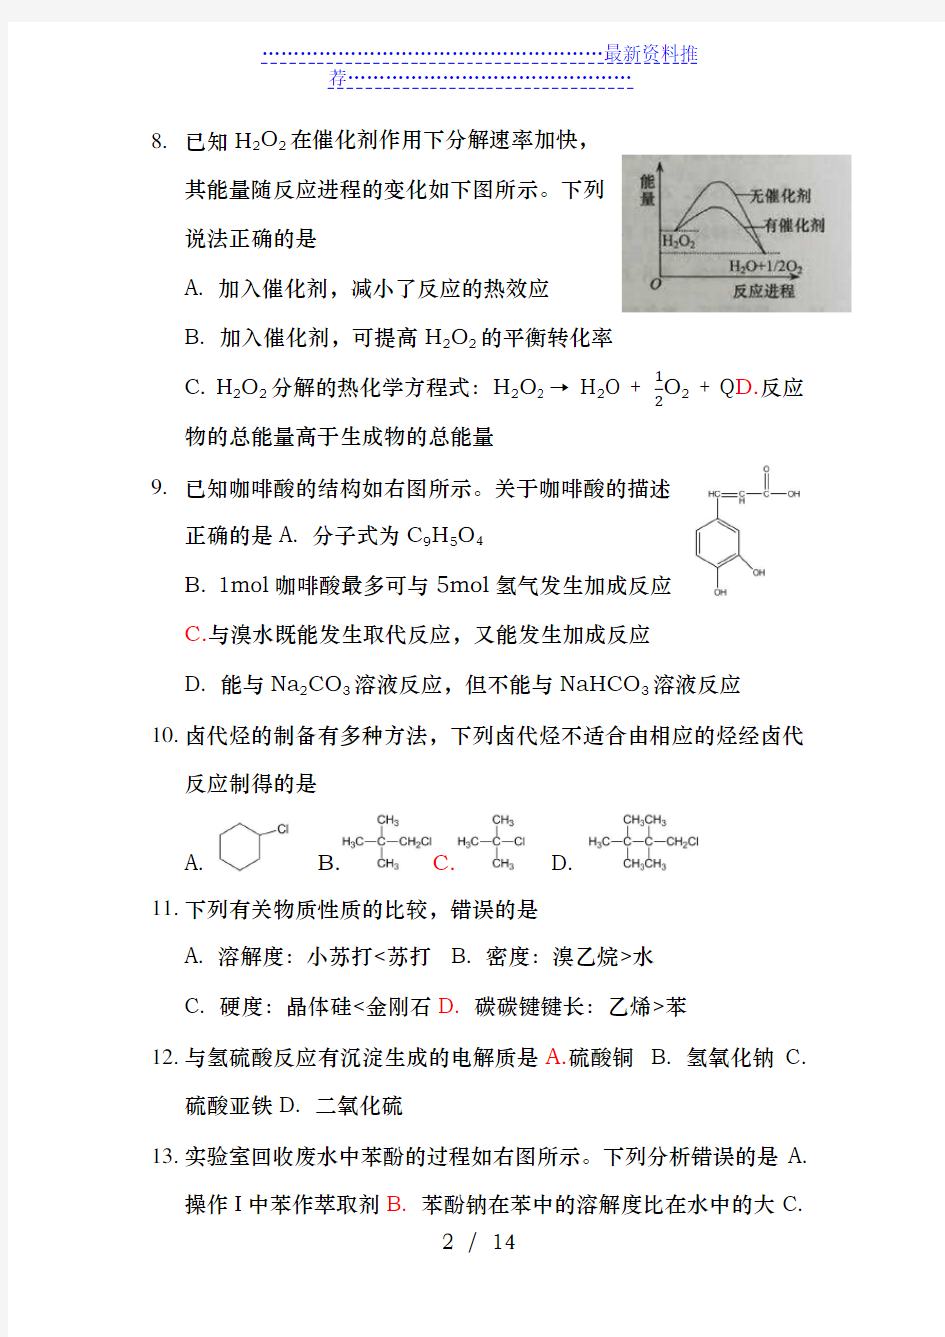 上海高考化学试卷及答案-整理